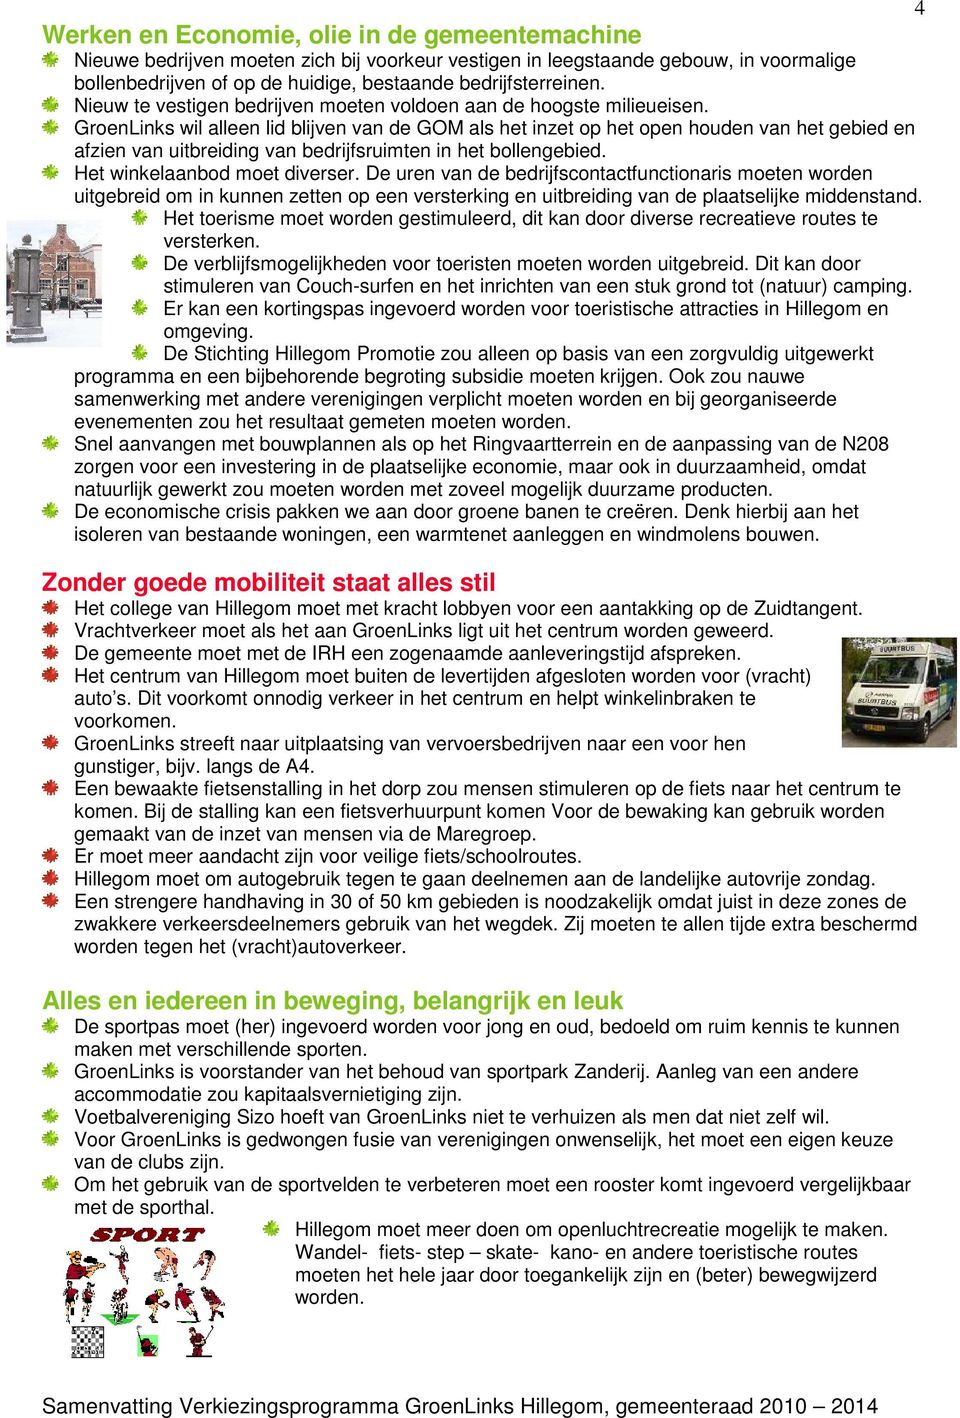 GroenLinks wil alleen lid blijven van de GOM als het inzet op het open houden van het gebied en afzien van uitbreiding van bedrijfsruimten in het bollengebied. Het winkelaanbod moet diverser.